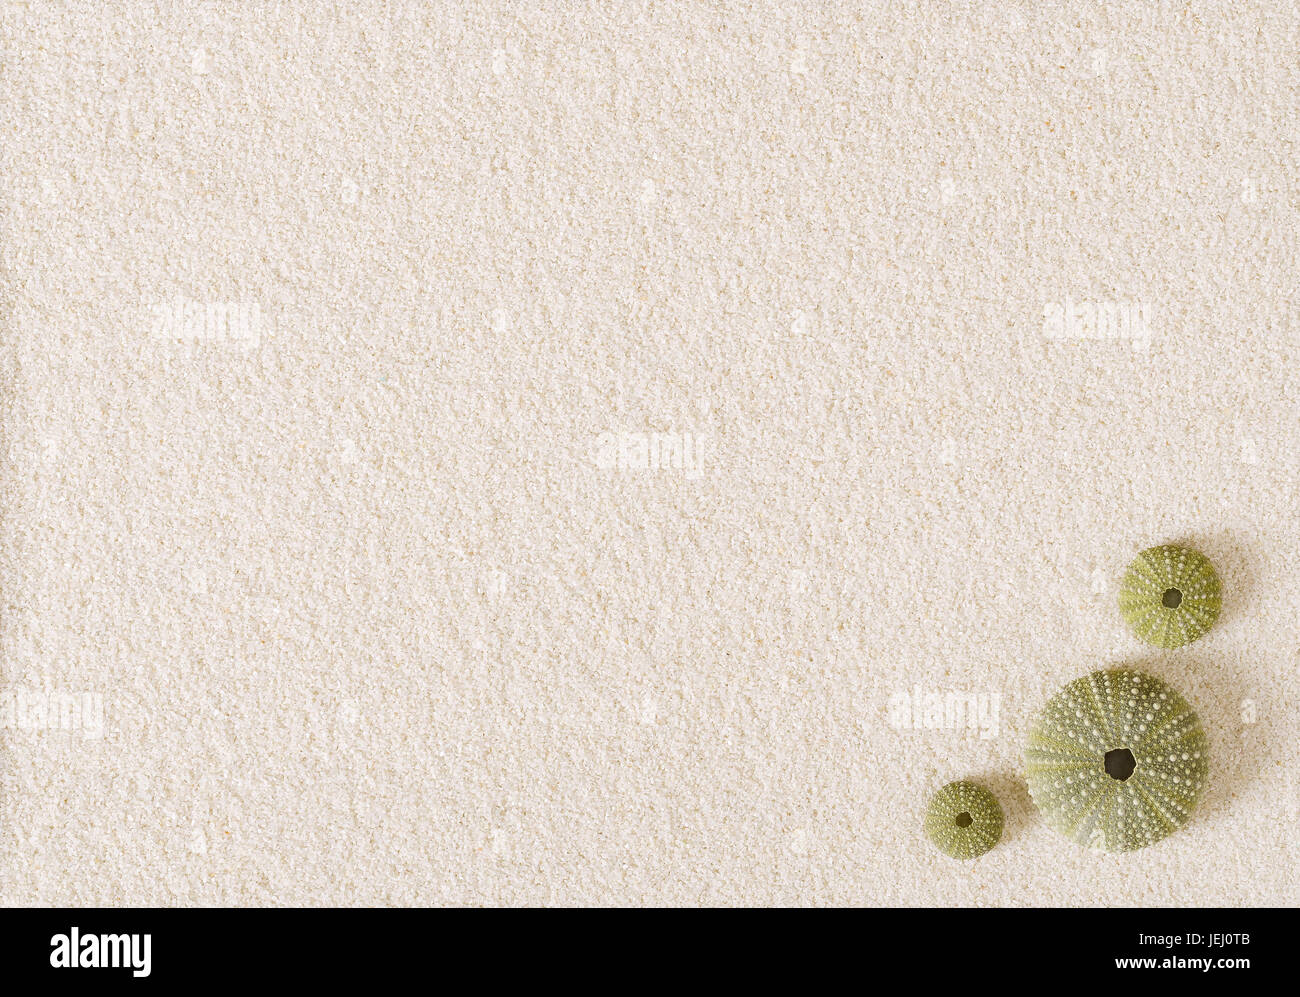 Trois obus de l'oursin vert sur une surface de sable blanc. Les hérissons de mer avec endoskeletons globulaire. Psammechinus miliaris à partir de la mer Méditerranée. Banque D'Images